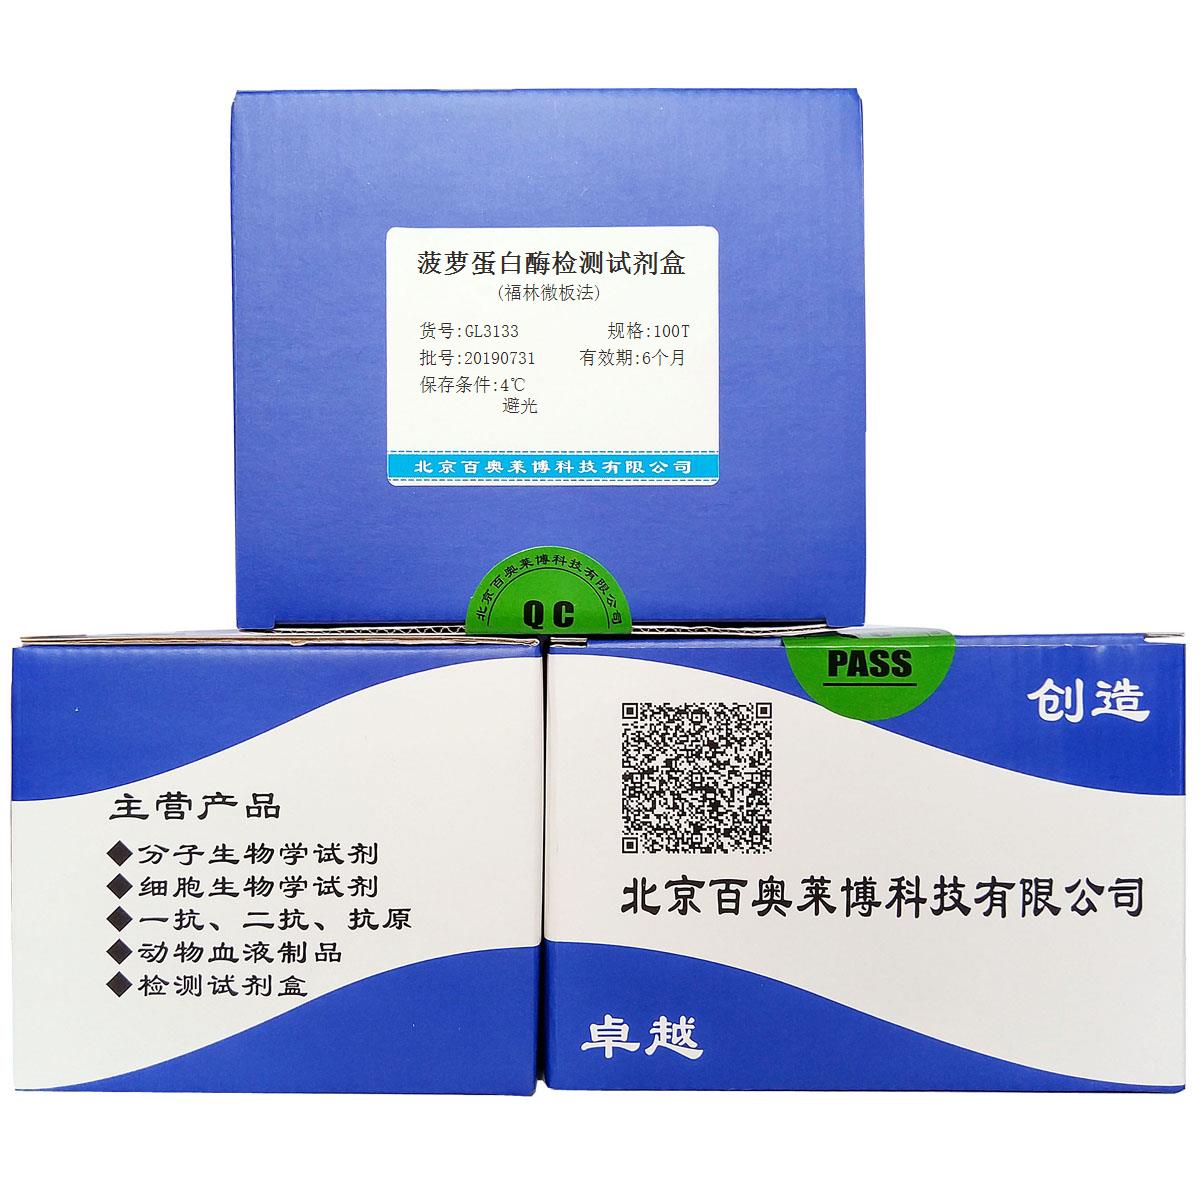 菠萝蛋白酶检测试剂盒(福林微板法)优惠促销